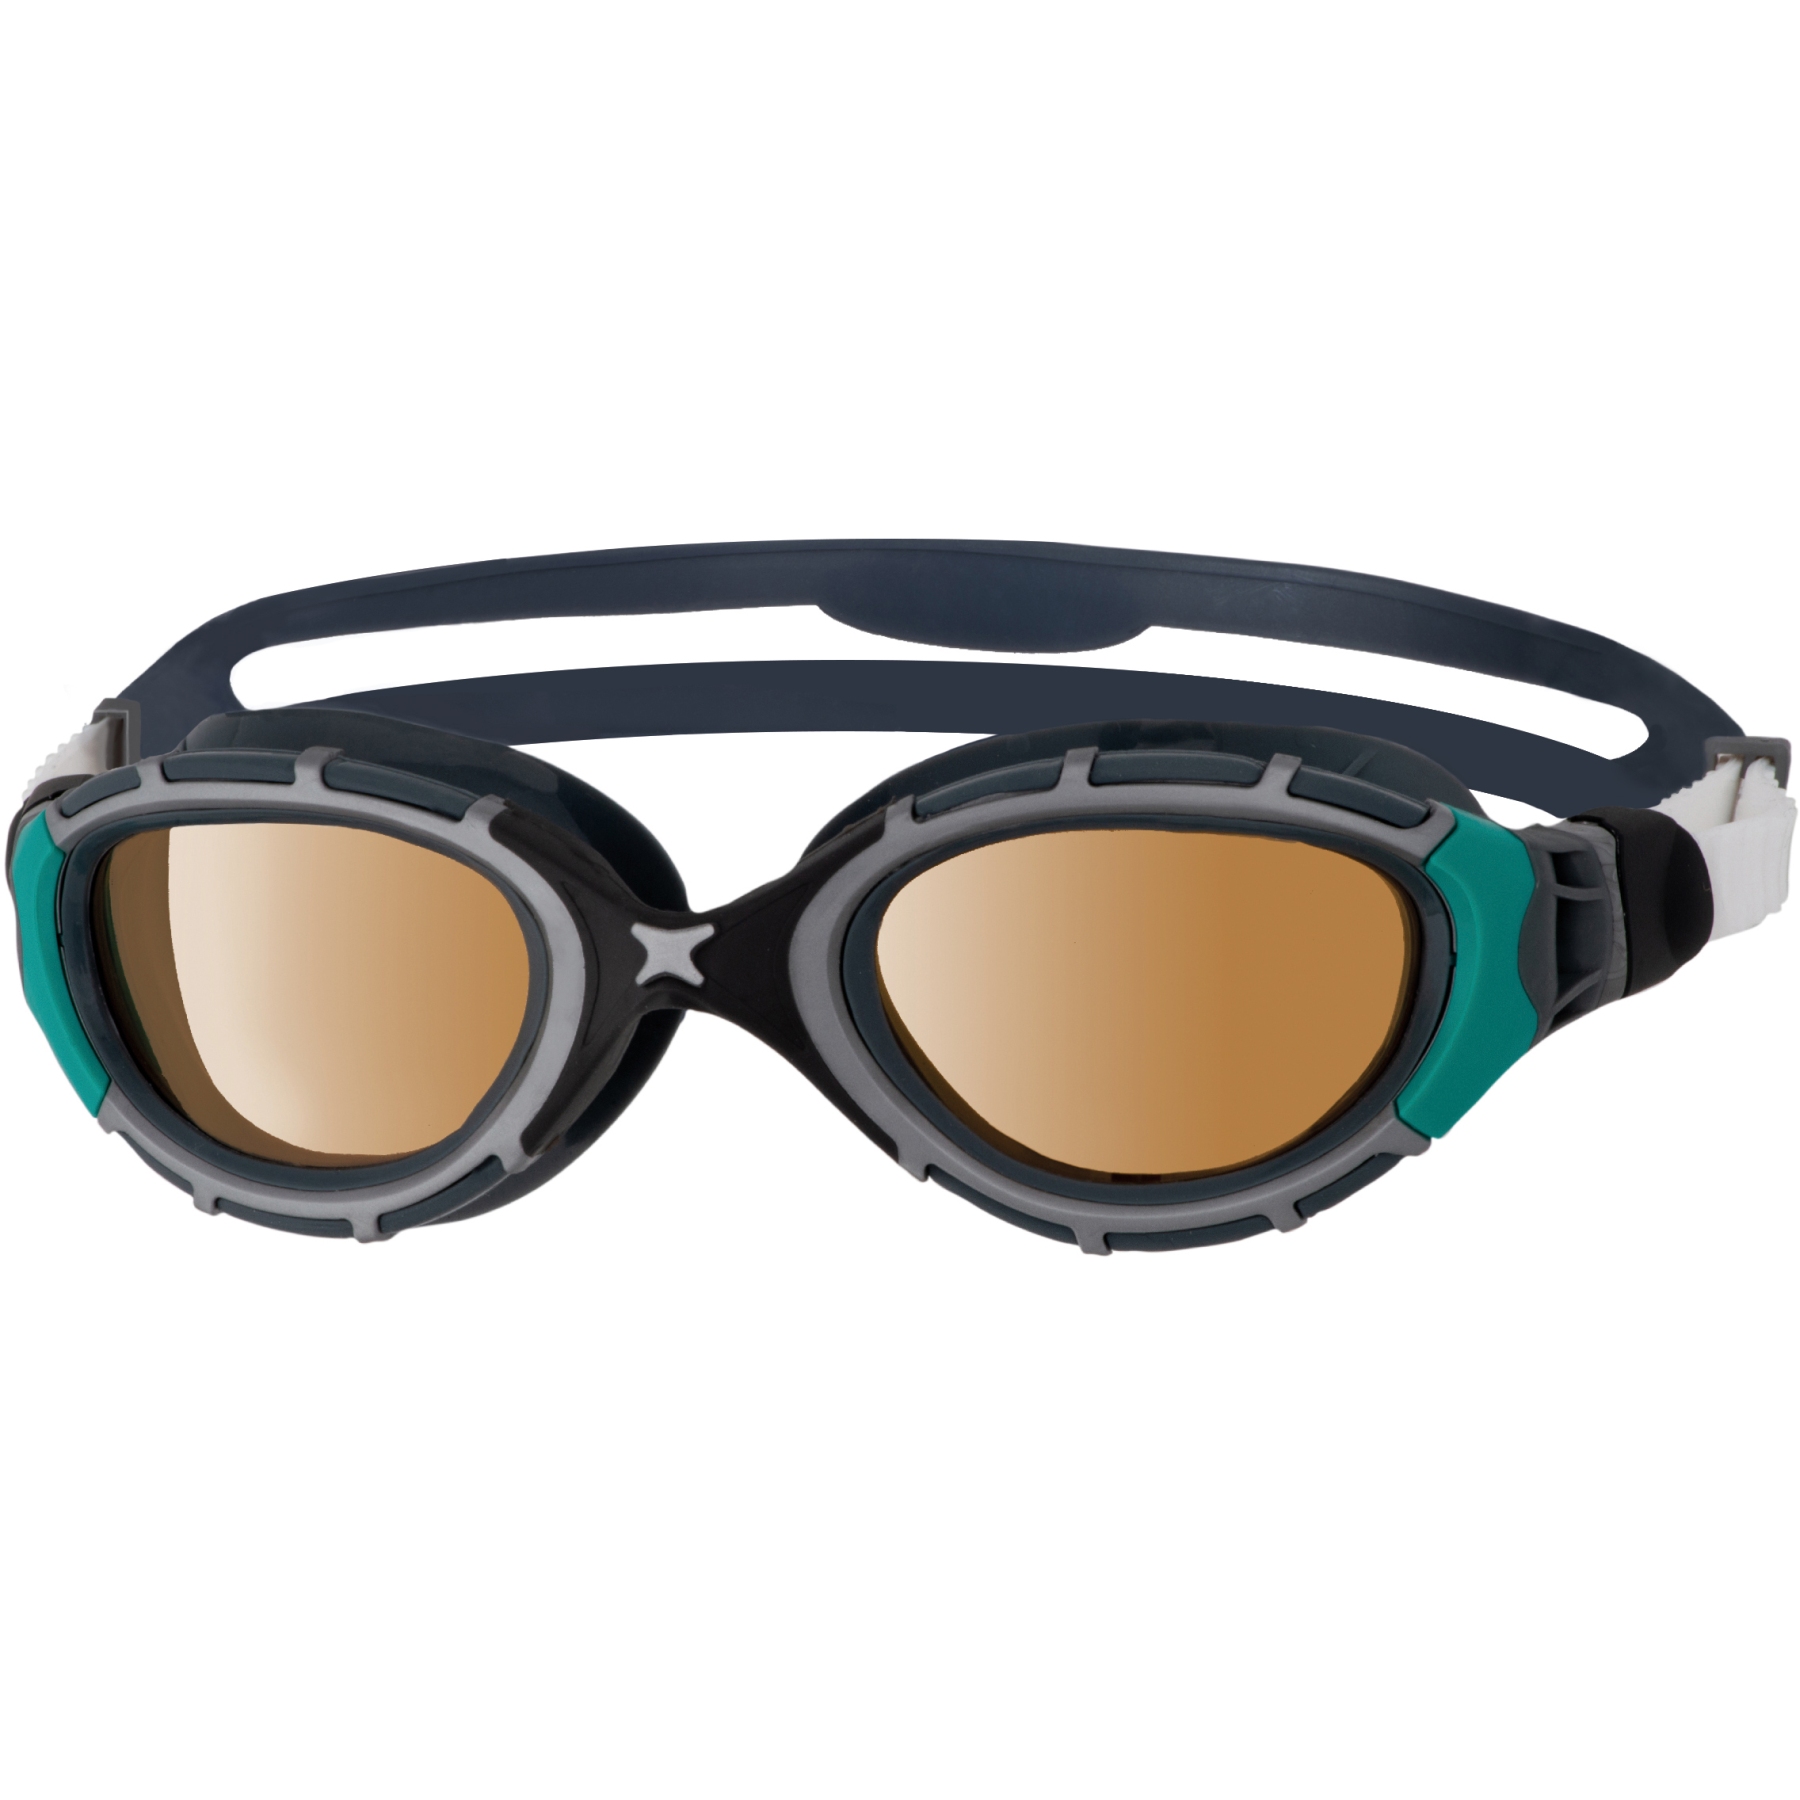 Produktbild von Zoggs Predator Flex Schwimmbrille - Polarized Ultra Copper Gläser - Regular Fit - Schwarz/Grün